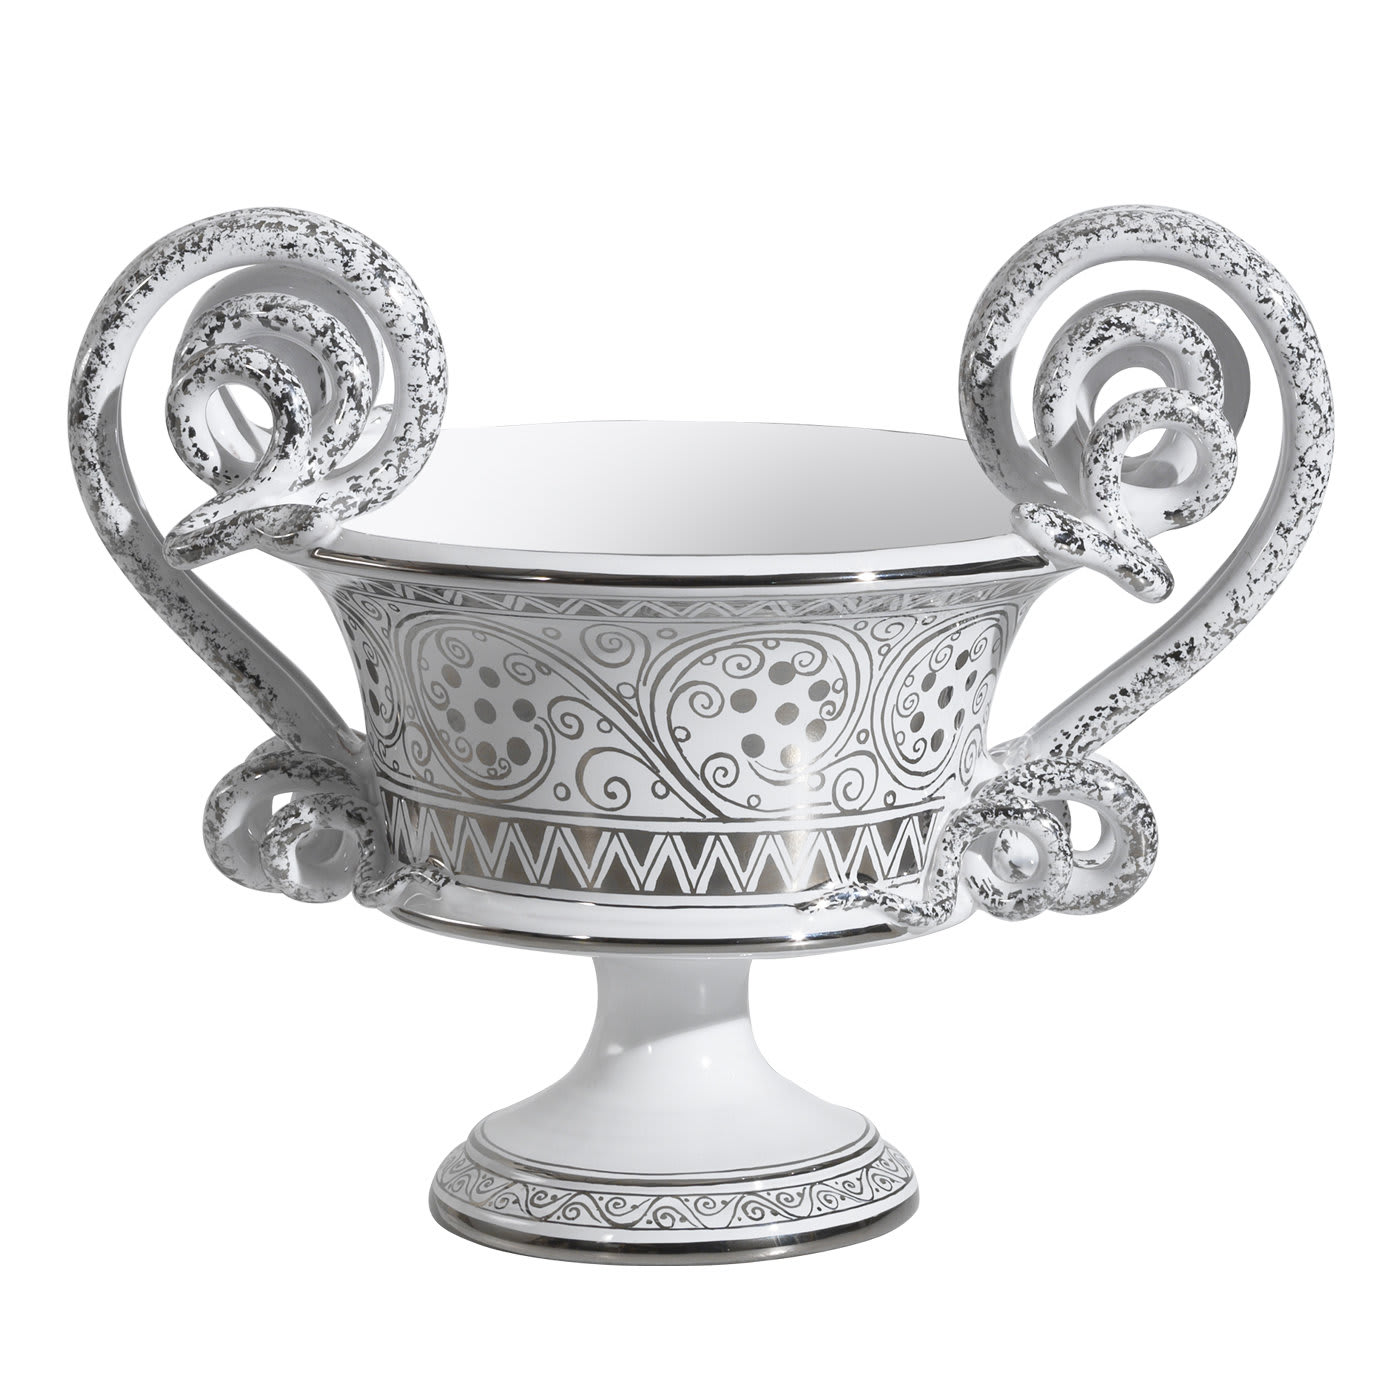 800 Cup with Platinum - Ceramica Gatti 1928